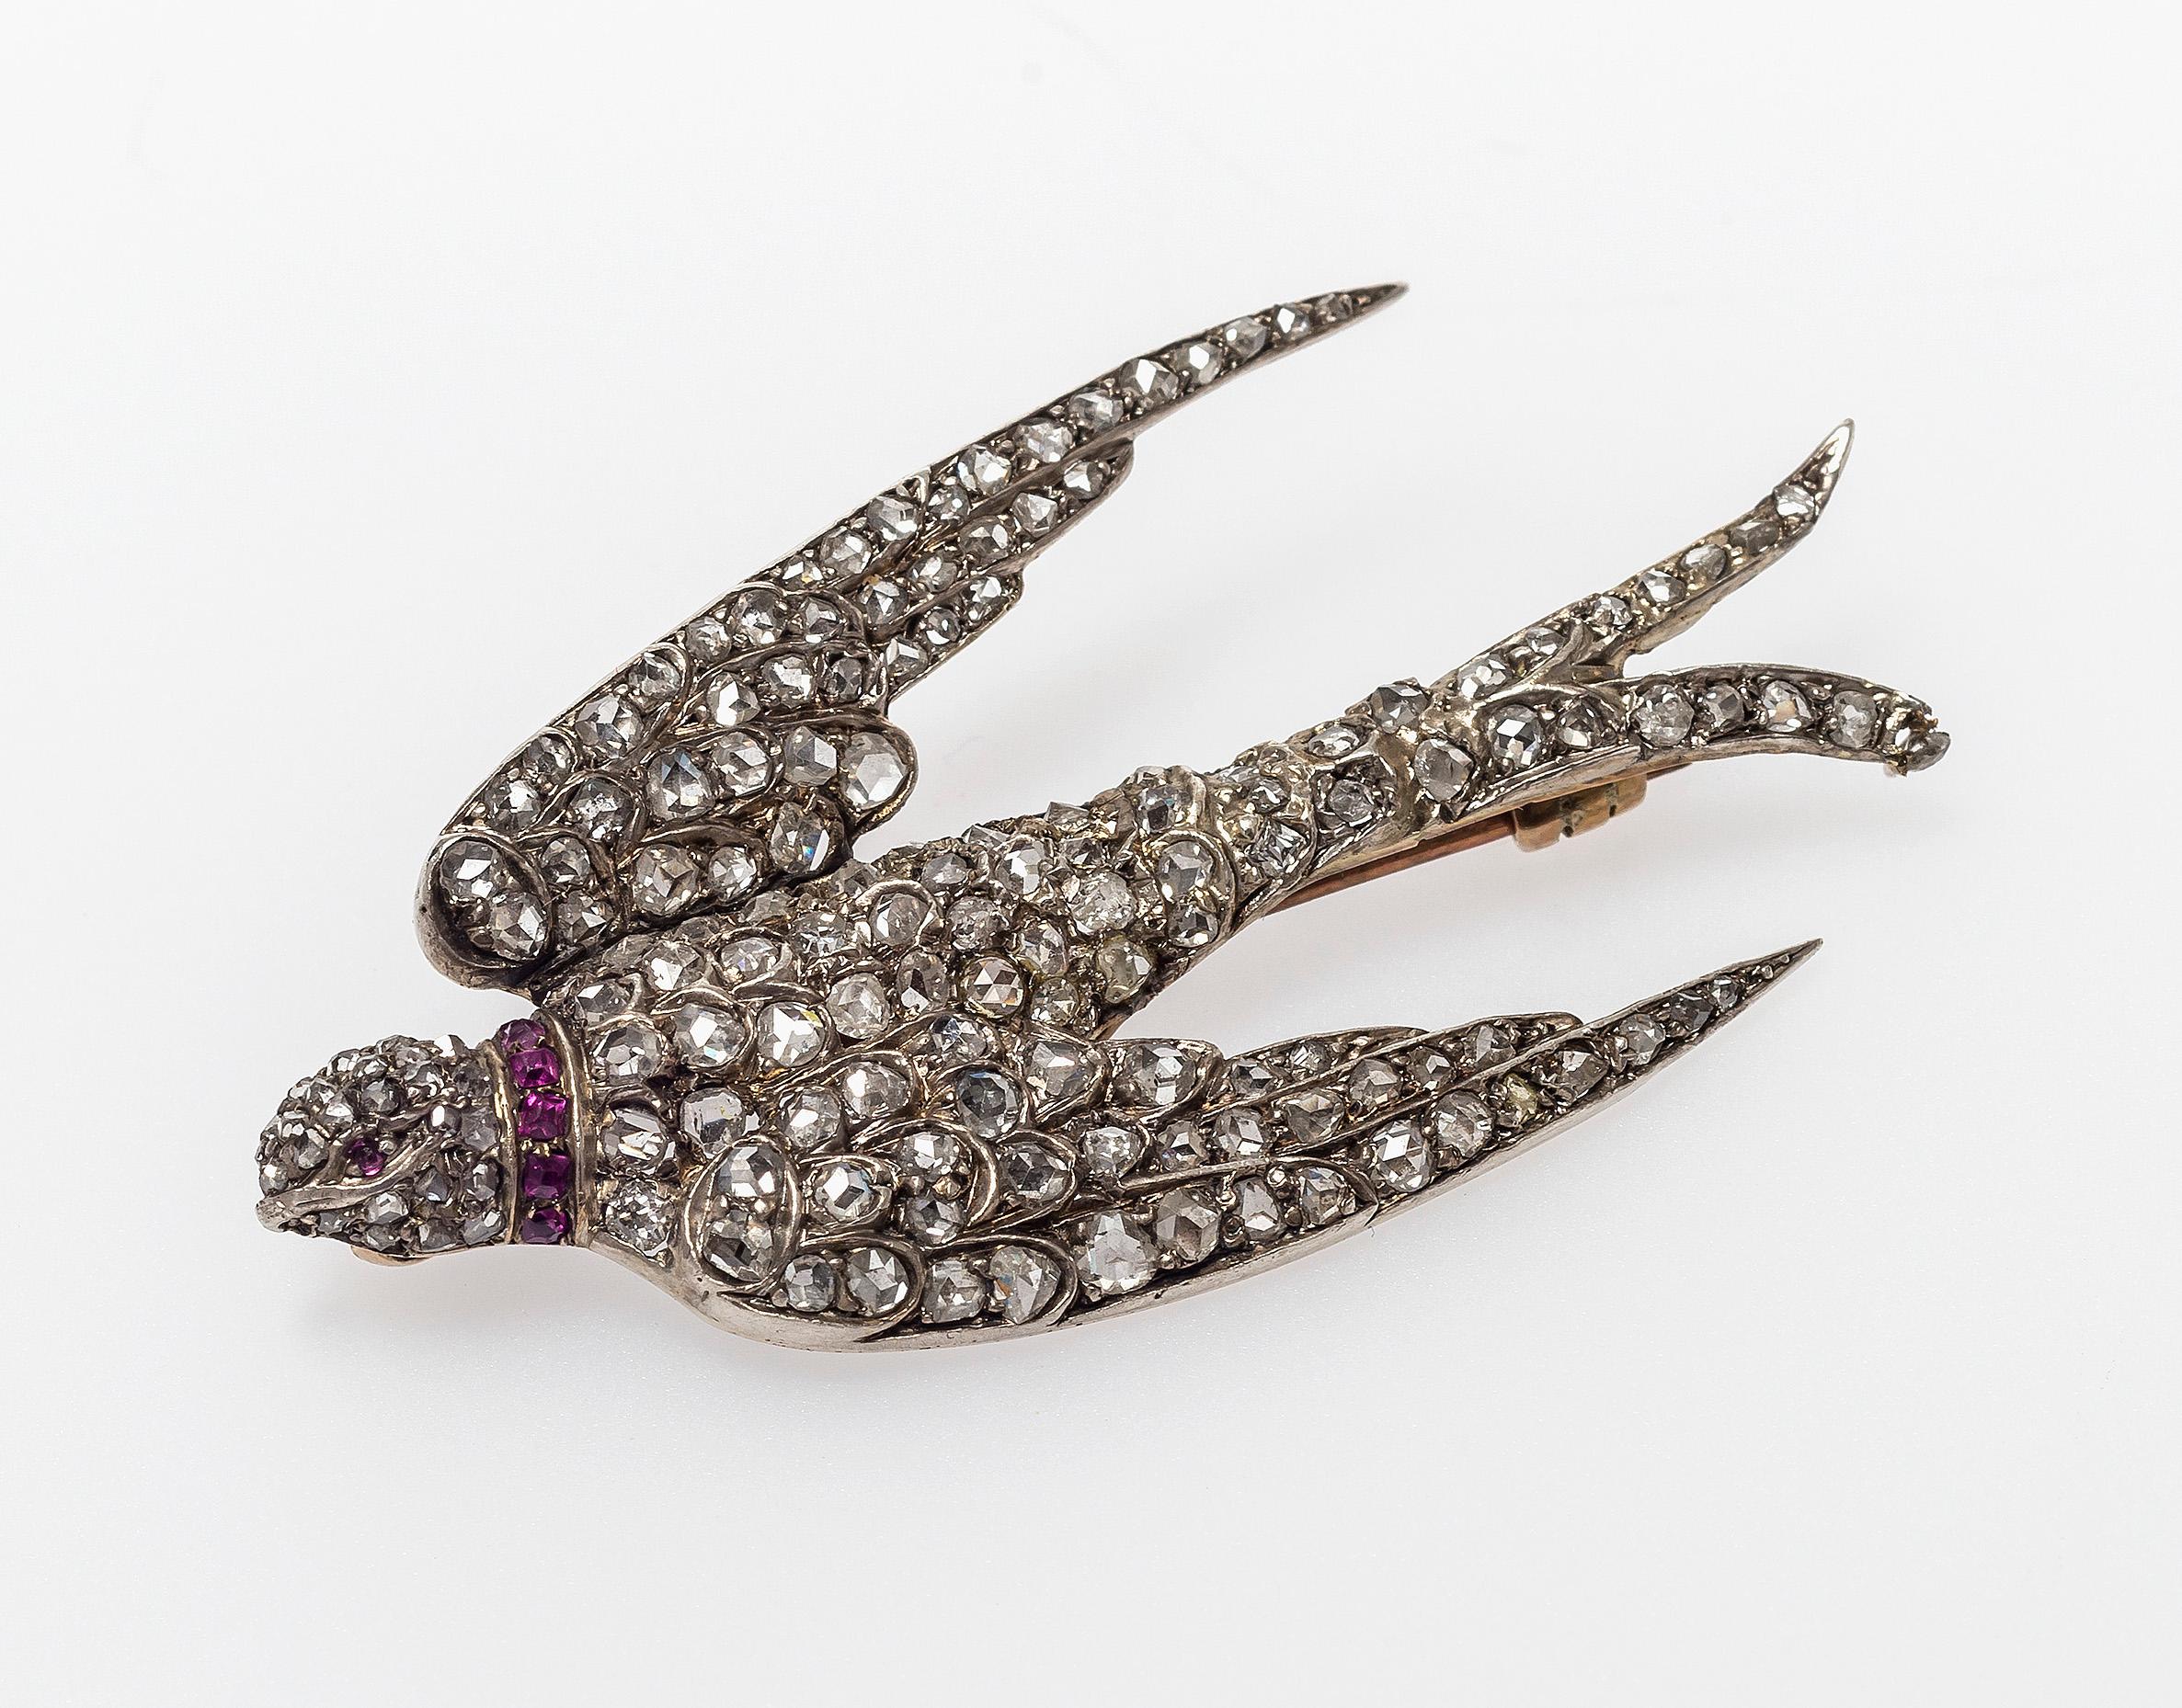 Diese elegante, tauchende Diamantschwalbe trägt ein rot emailliertes Band um ihren Hals. Sie ist vollständig mit Altschliff-Diamanten besetzt und als Brosche montiert, könnte aber auch als Halskette an einem Samtband getragen werden.
Silber und